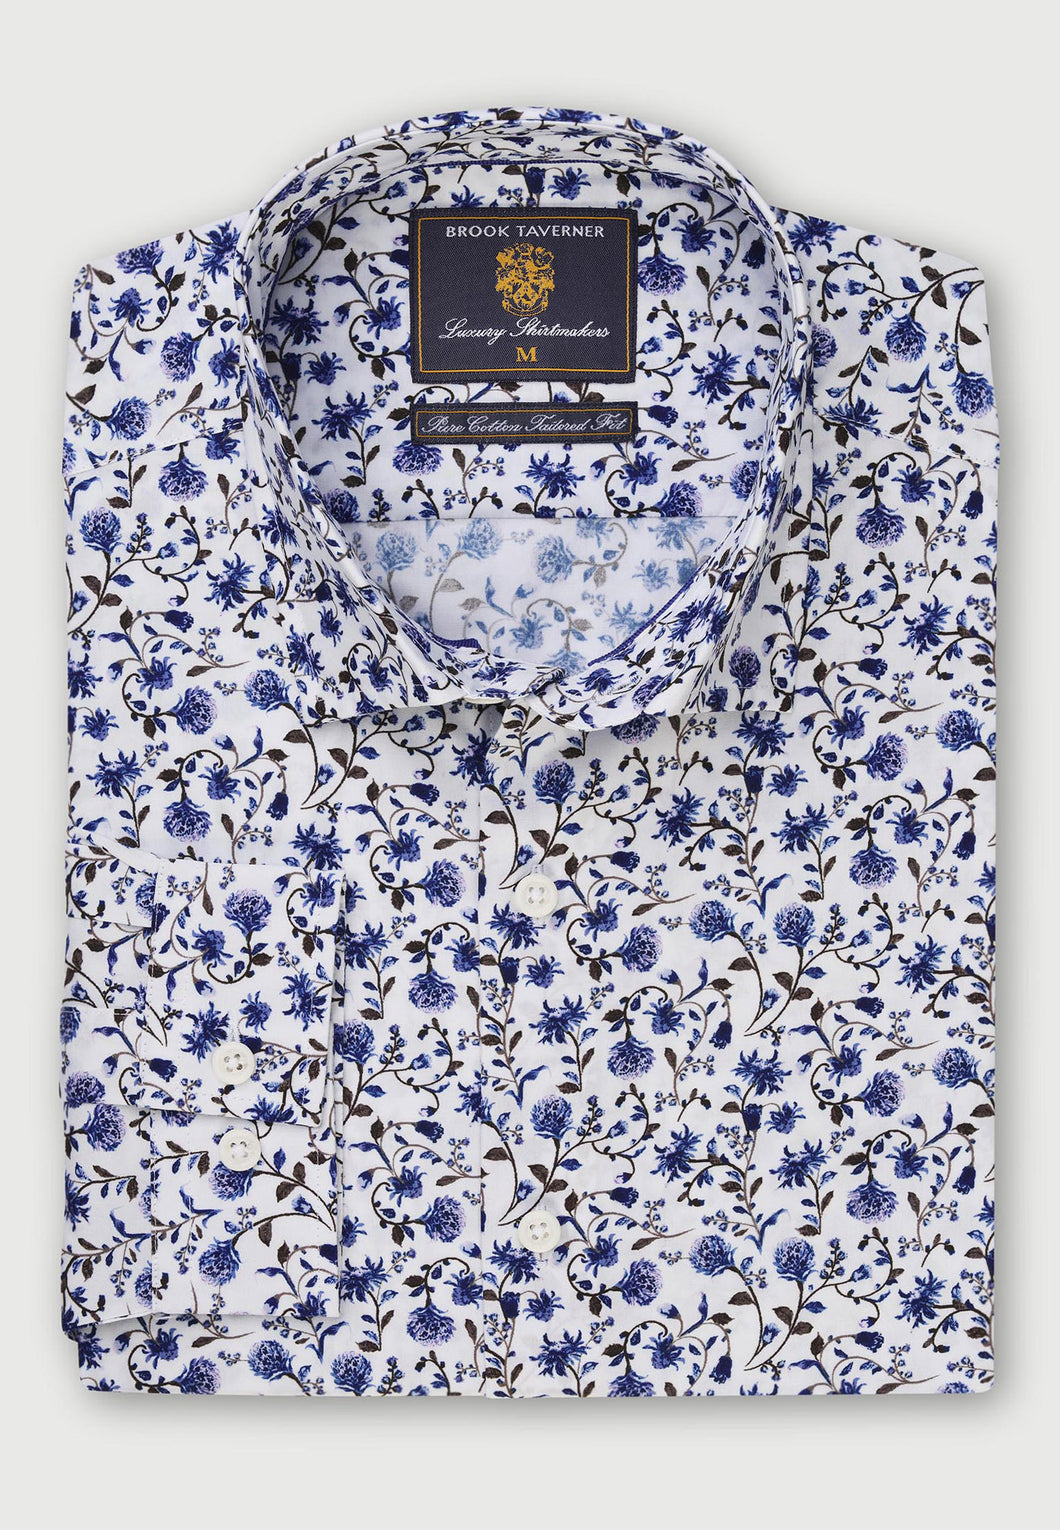 BROOK TAVERNER <BR>
Floral Print LS Shirt <BR>
Blue <BR>